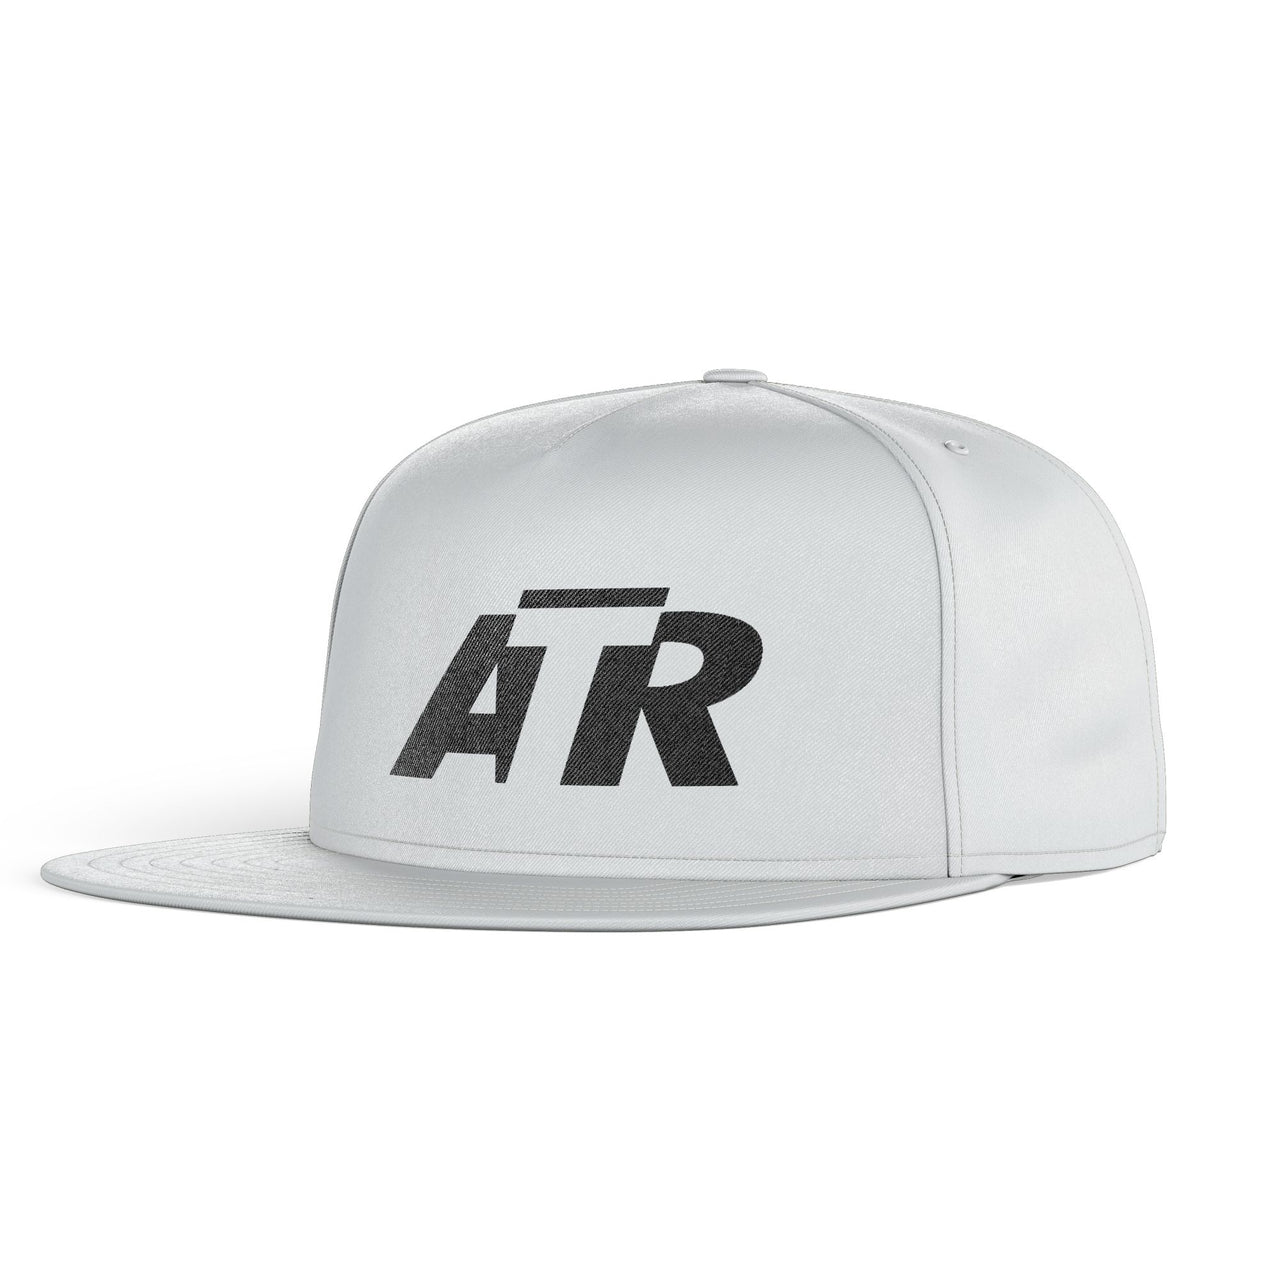 ATR & Text Designed Snapback Caps & Hats